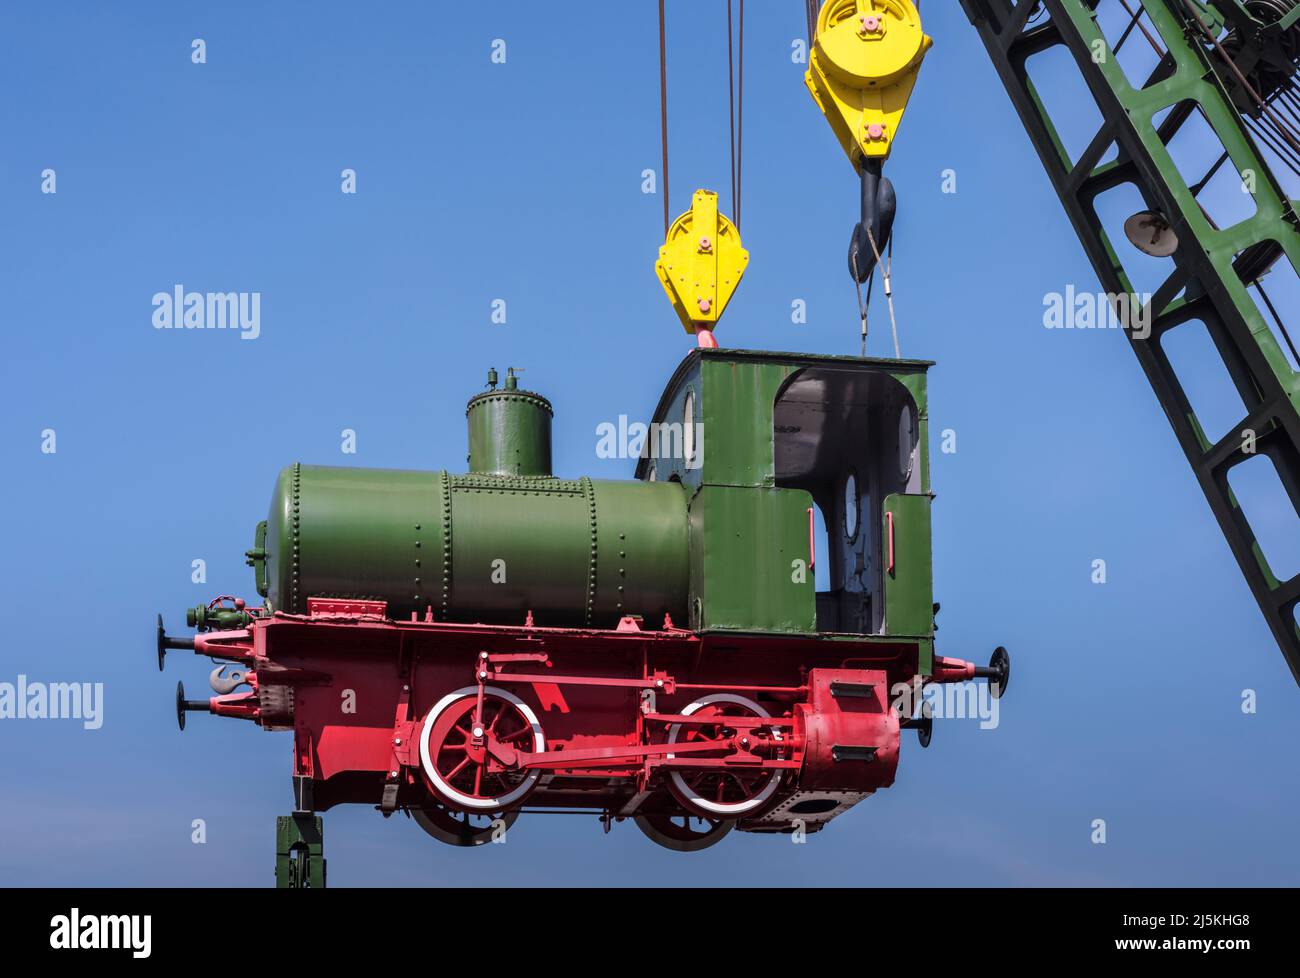 Carino trenino verde nostalgico a vapore appeso in aria su un camion gru, blu skye e spazio copia, Germania Foto Stock